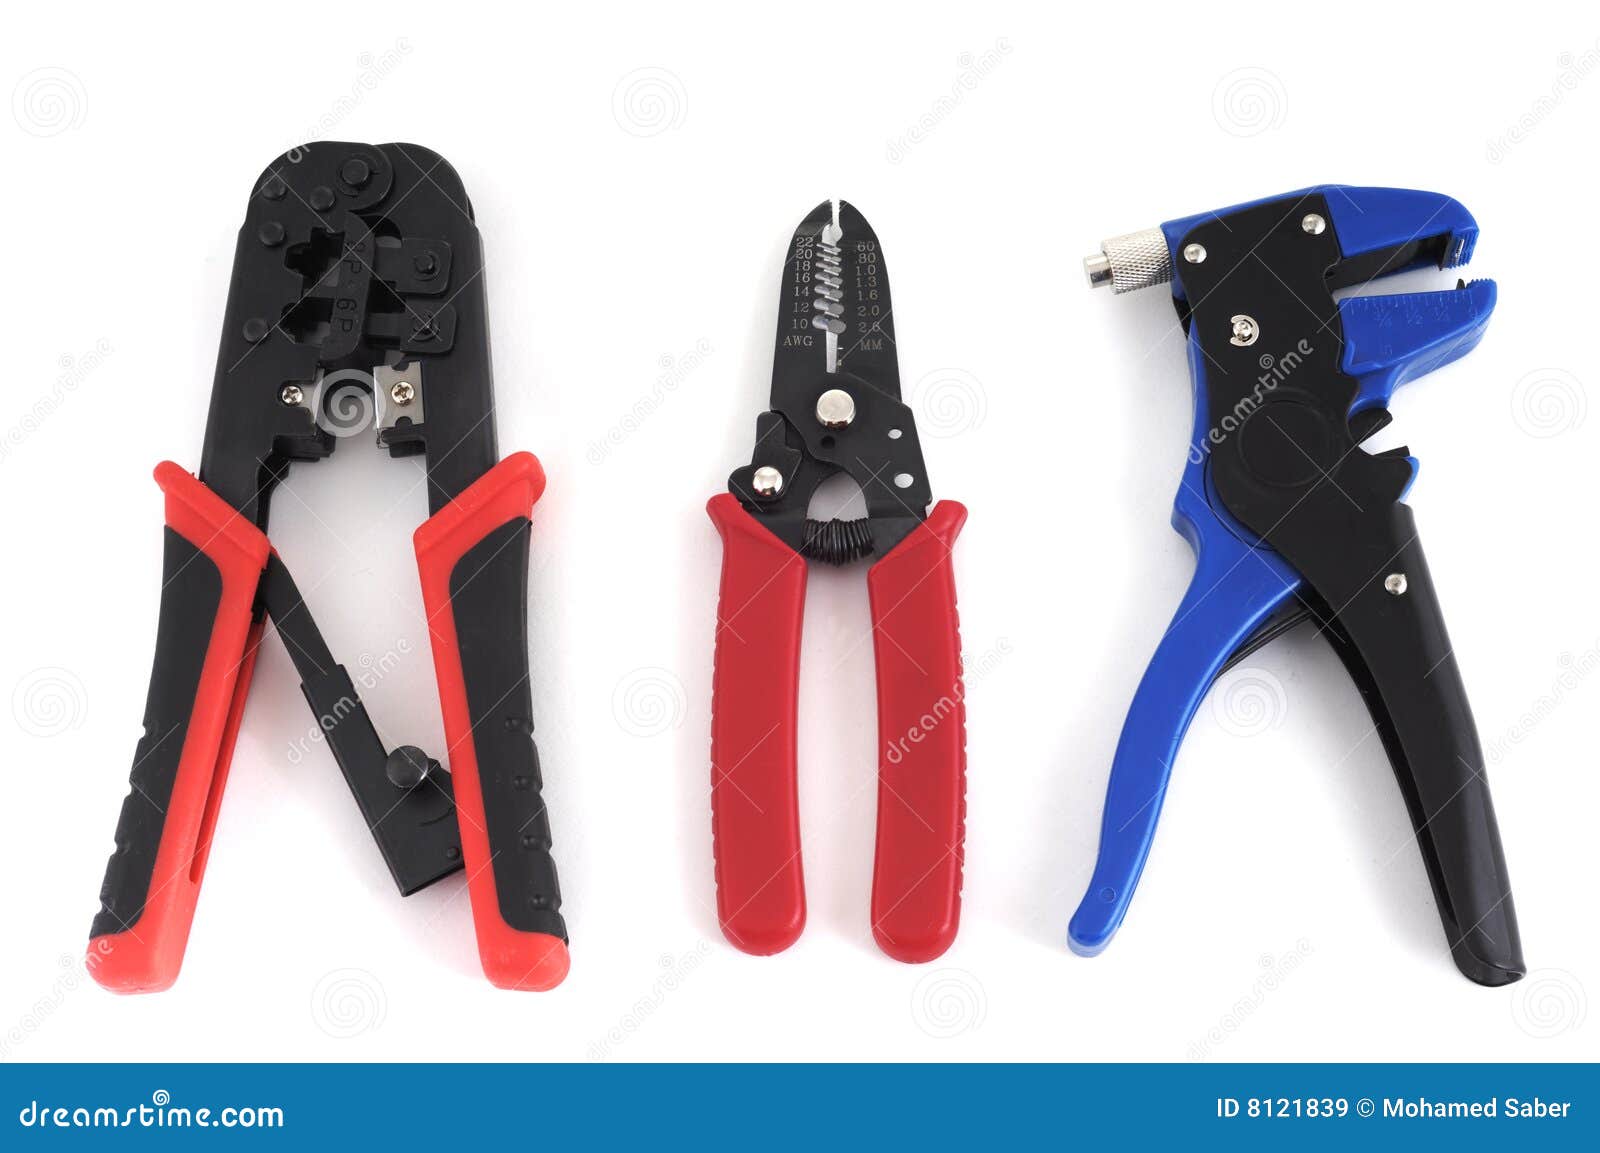 crimper and stripper tools